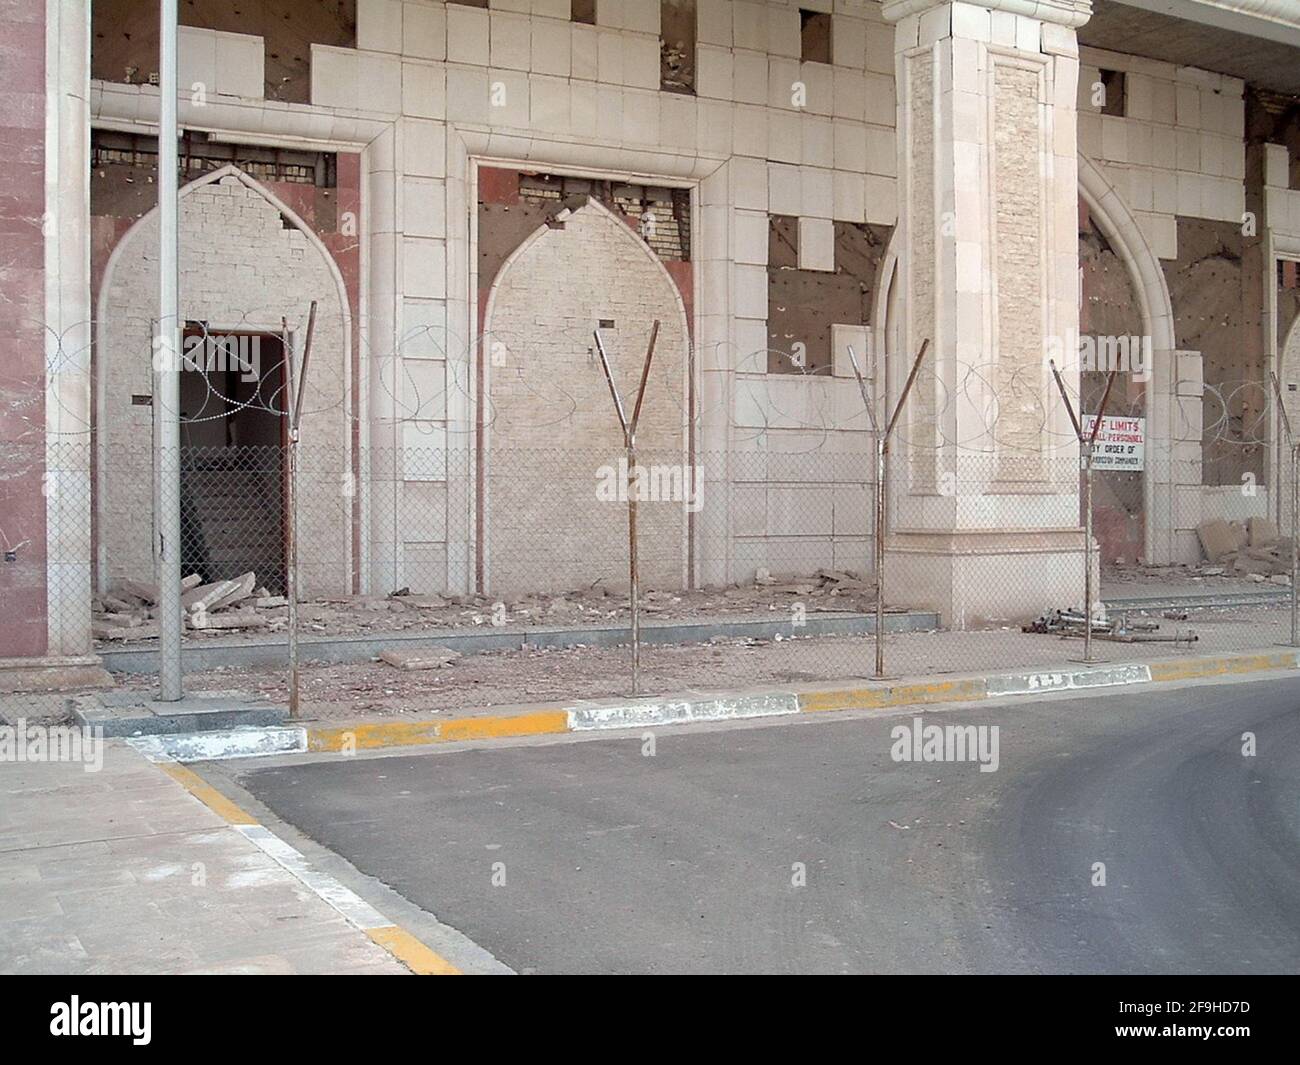 La bataille a endommagé le bâtiment du Camp Slayer, à Bagdad, en Irak Banque D'Images